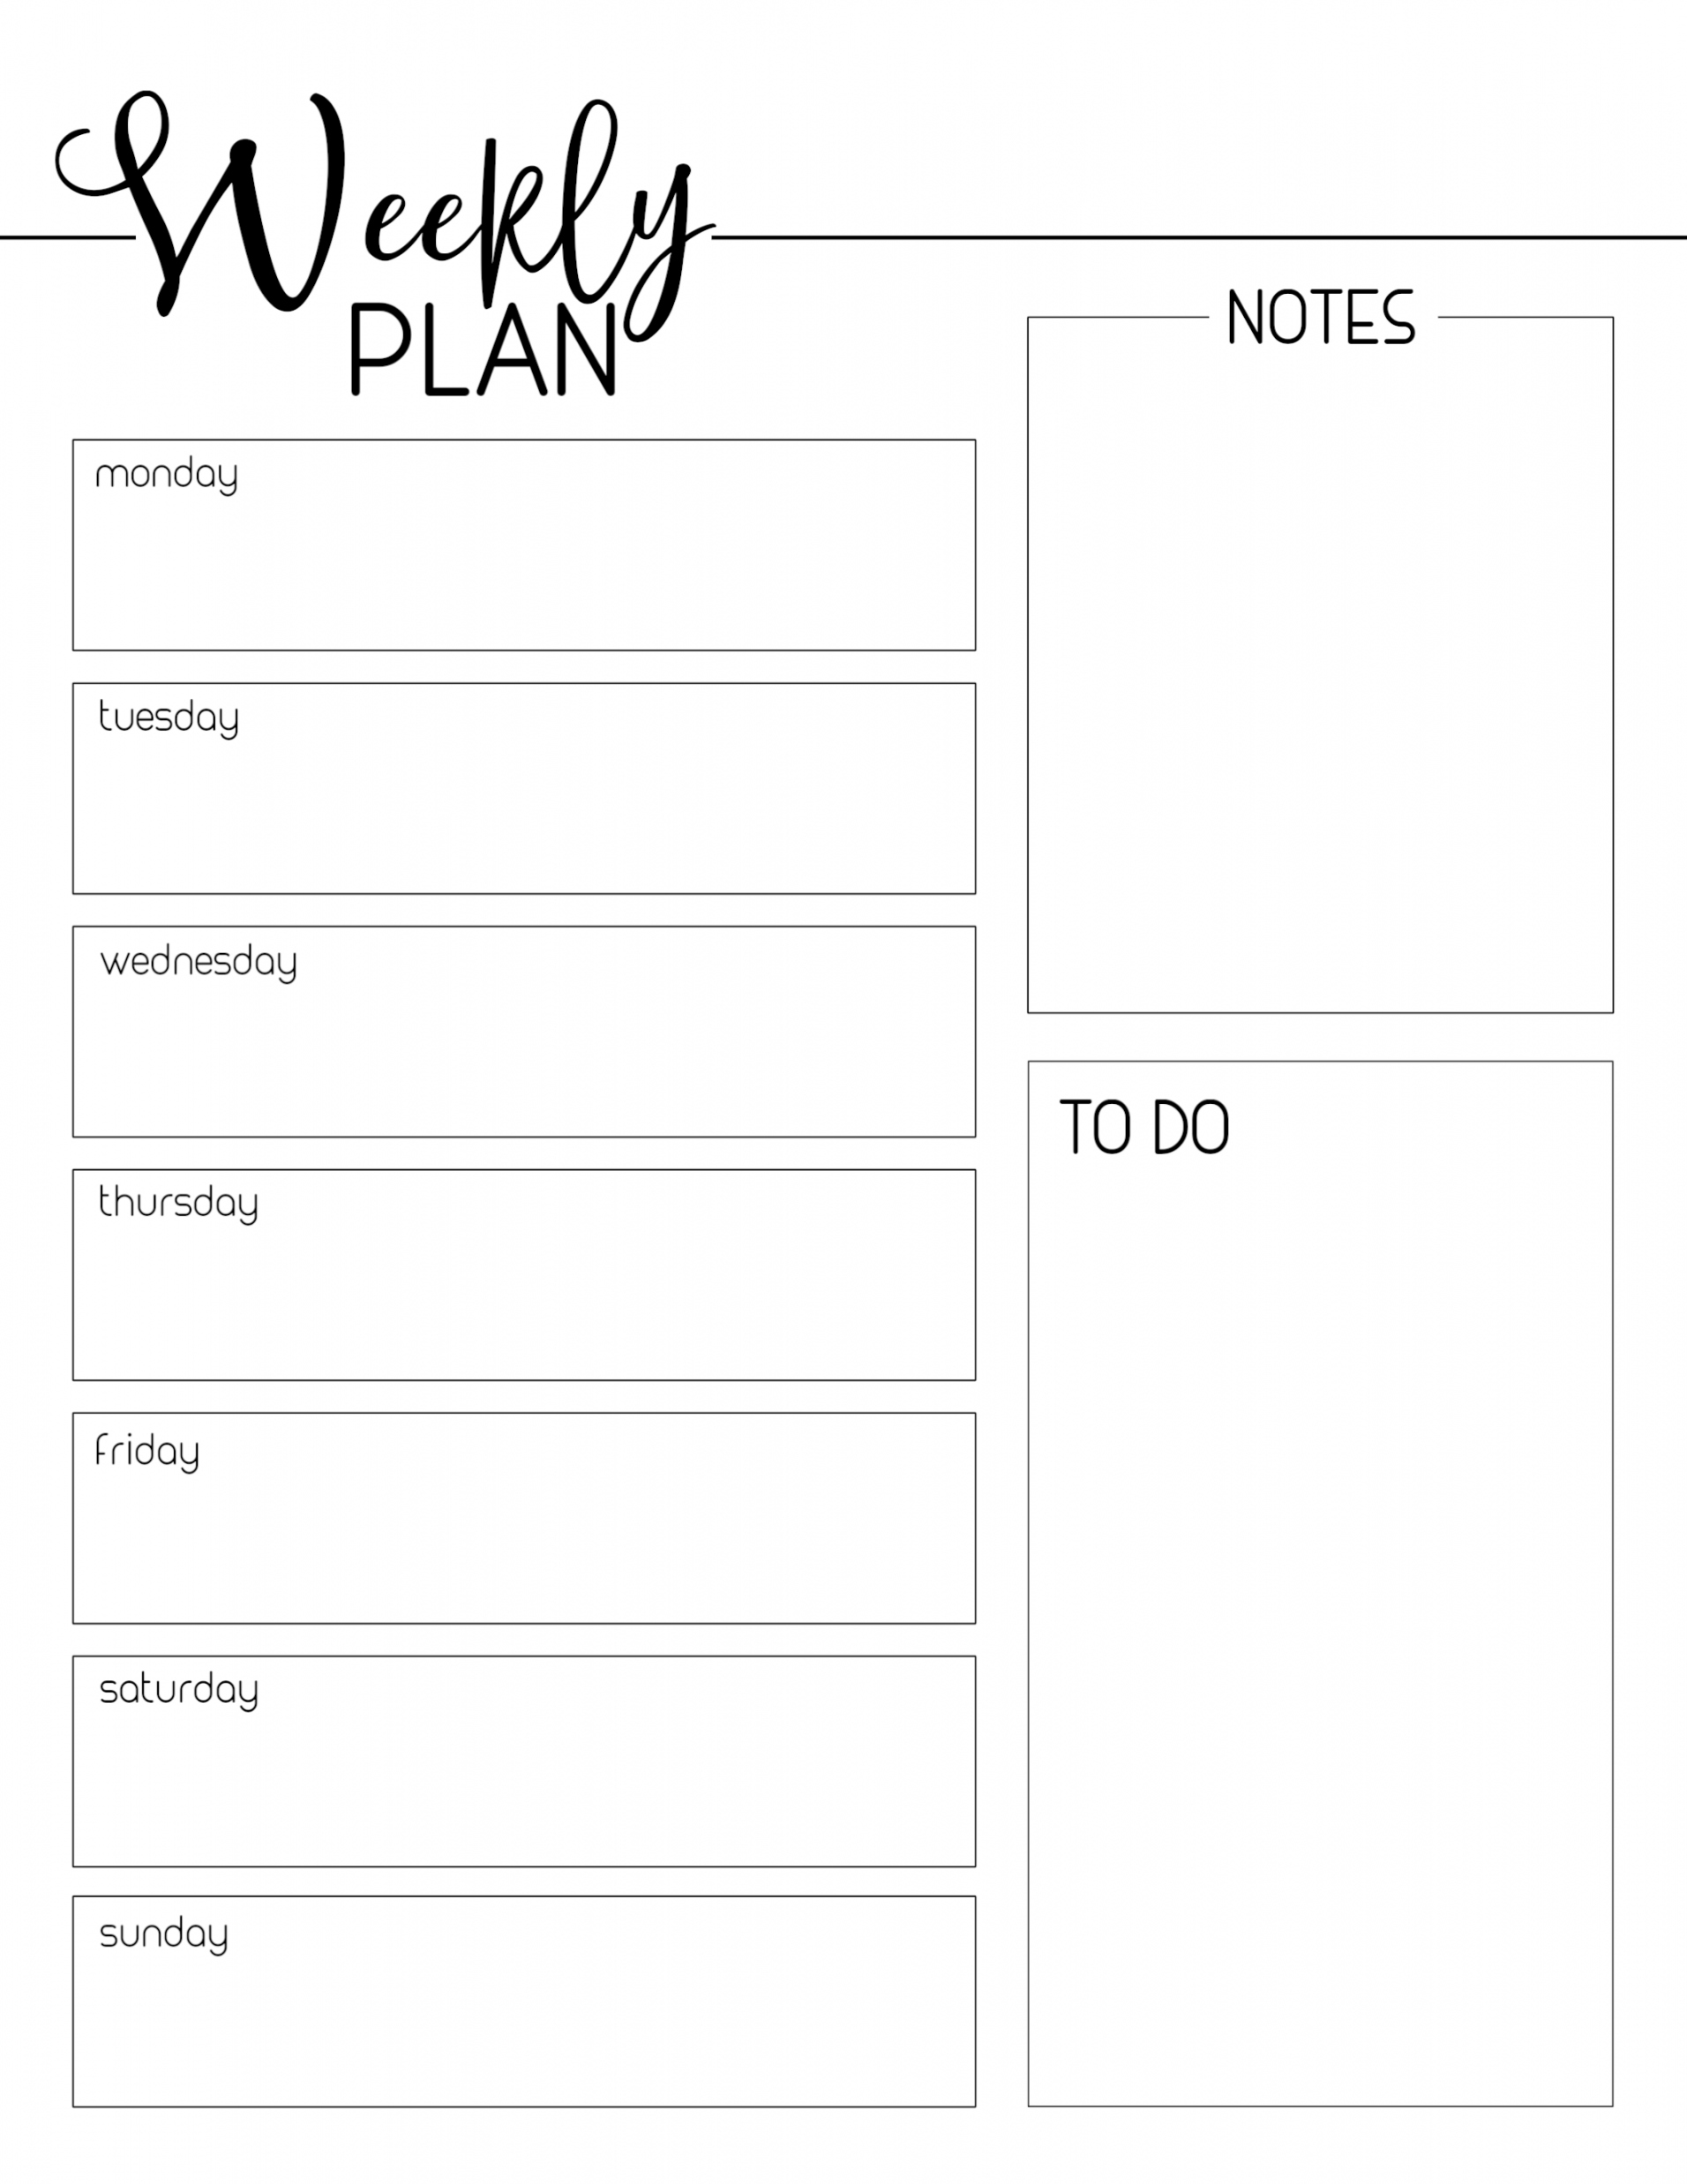 Free Weekly Planner Printable - Printable - Weekly Planner Template Free Printable - Paper Trail Design